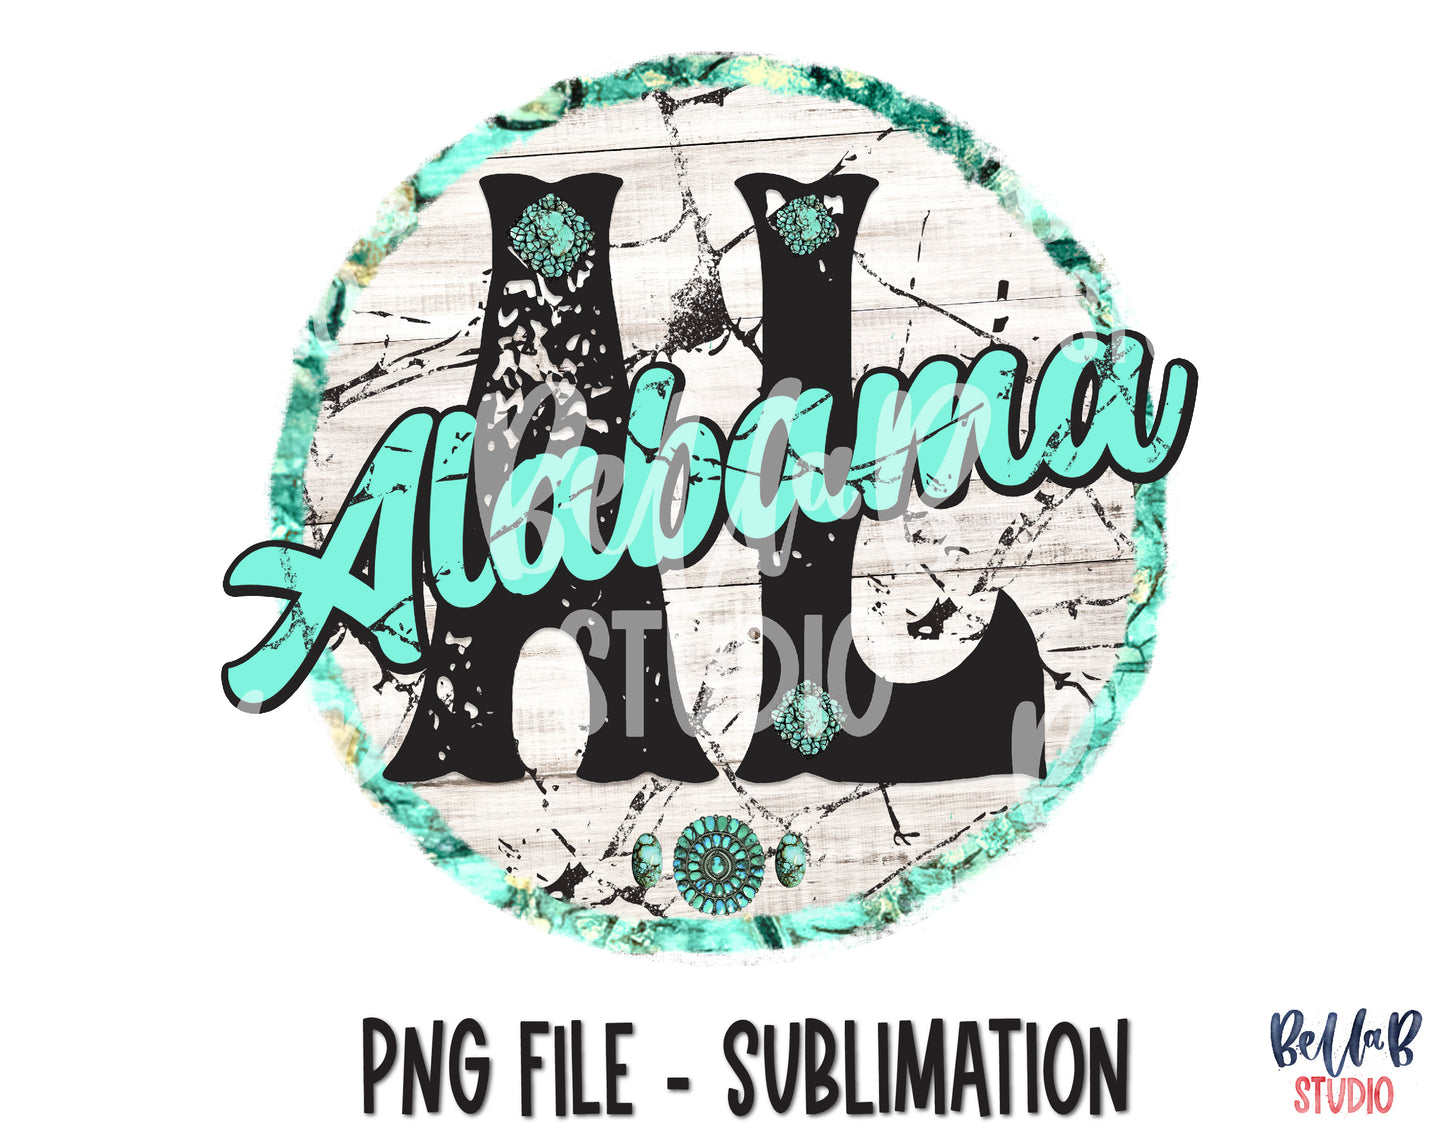 Alabama Turquoise Sublimation Design